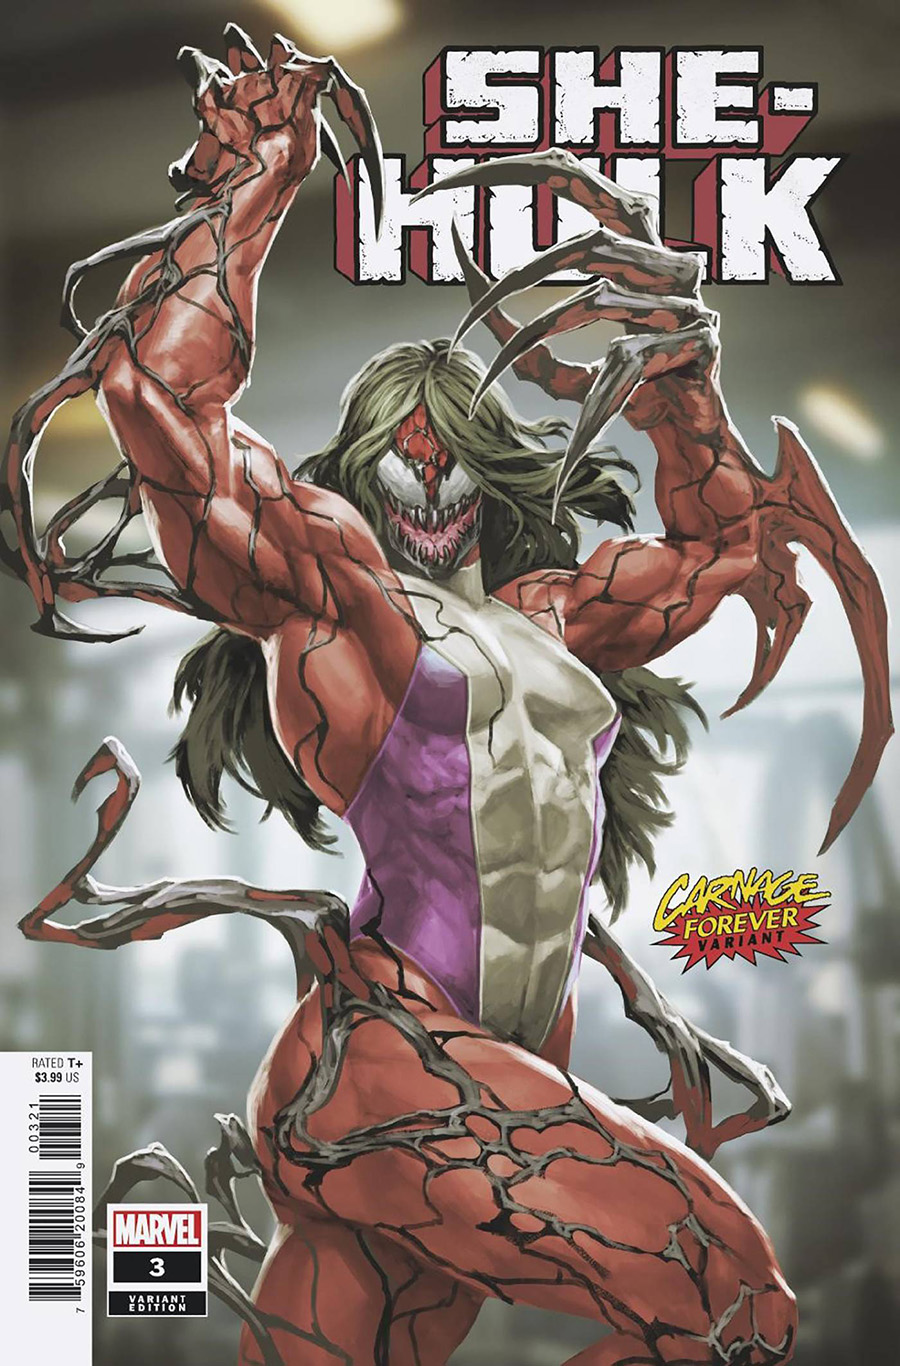 She-Hulk Vol 4 #3 Cover B Variant Skan Carnage Forever Cover